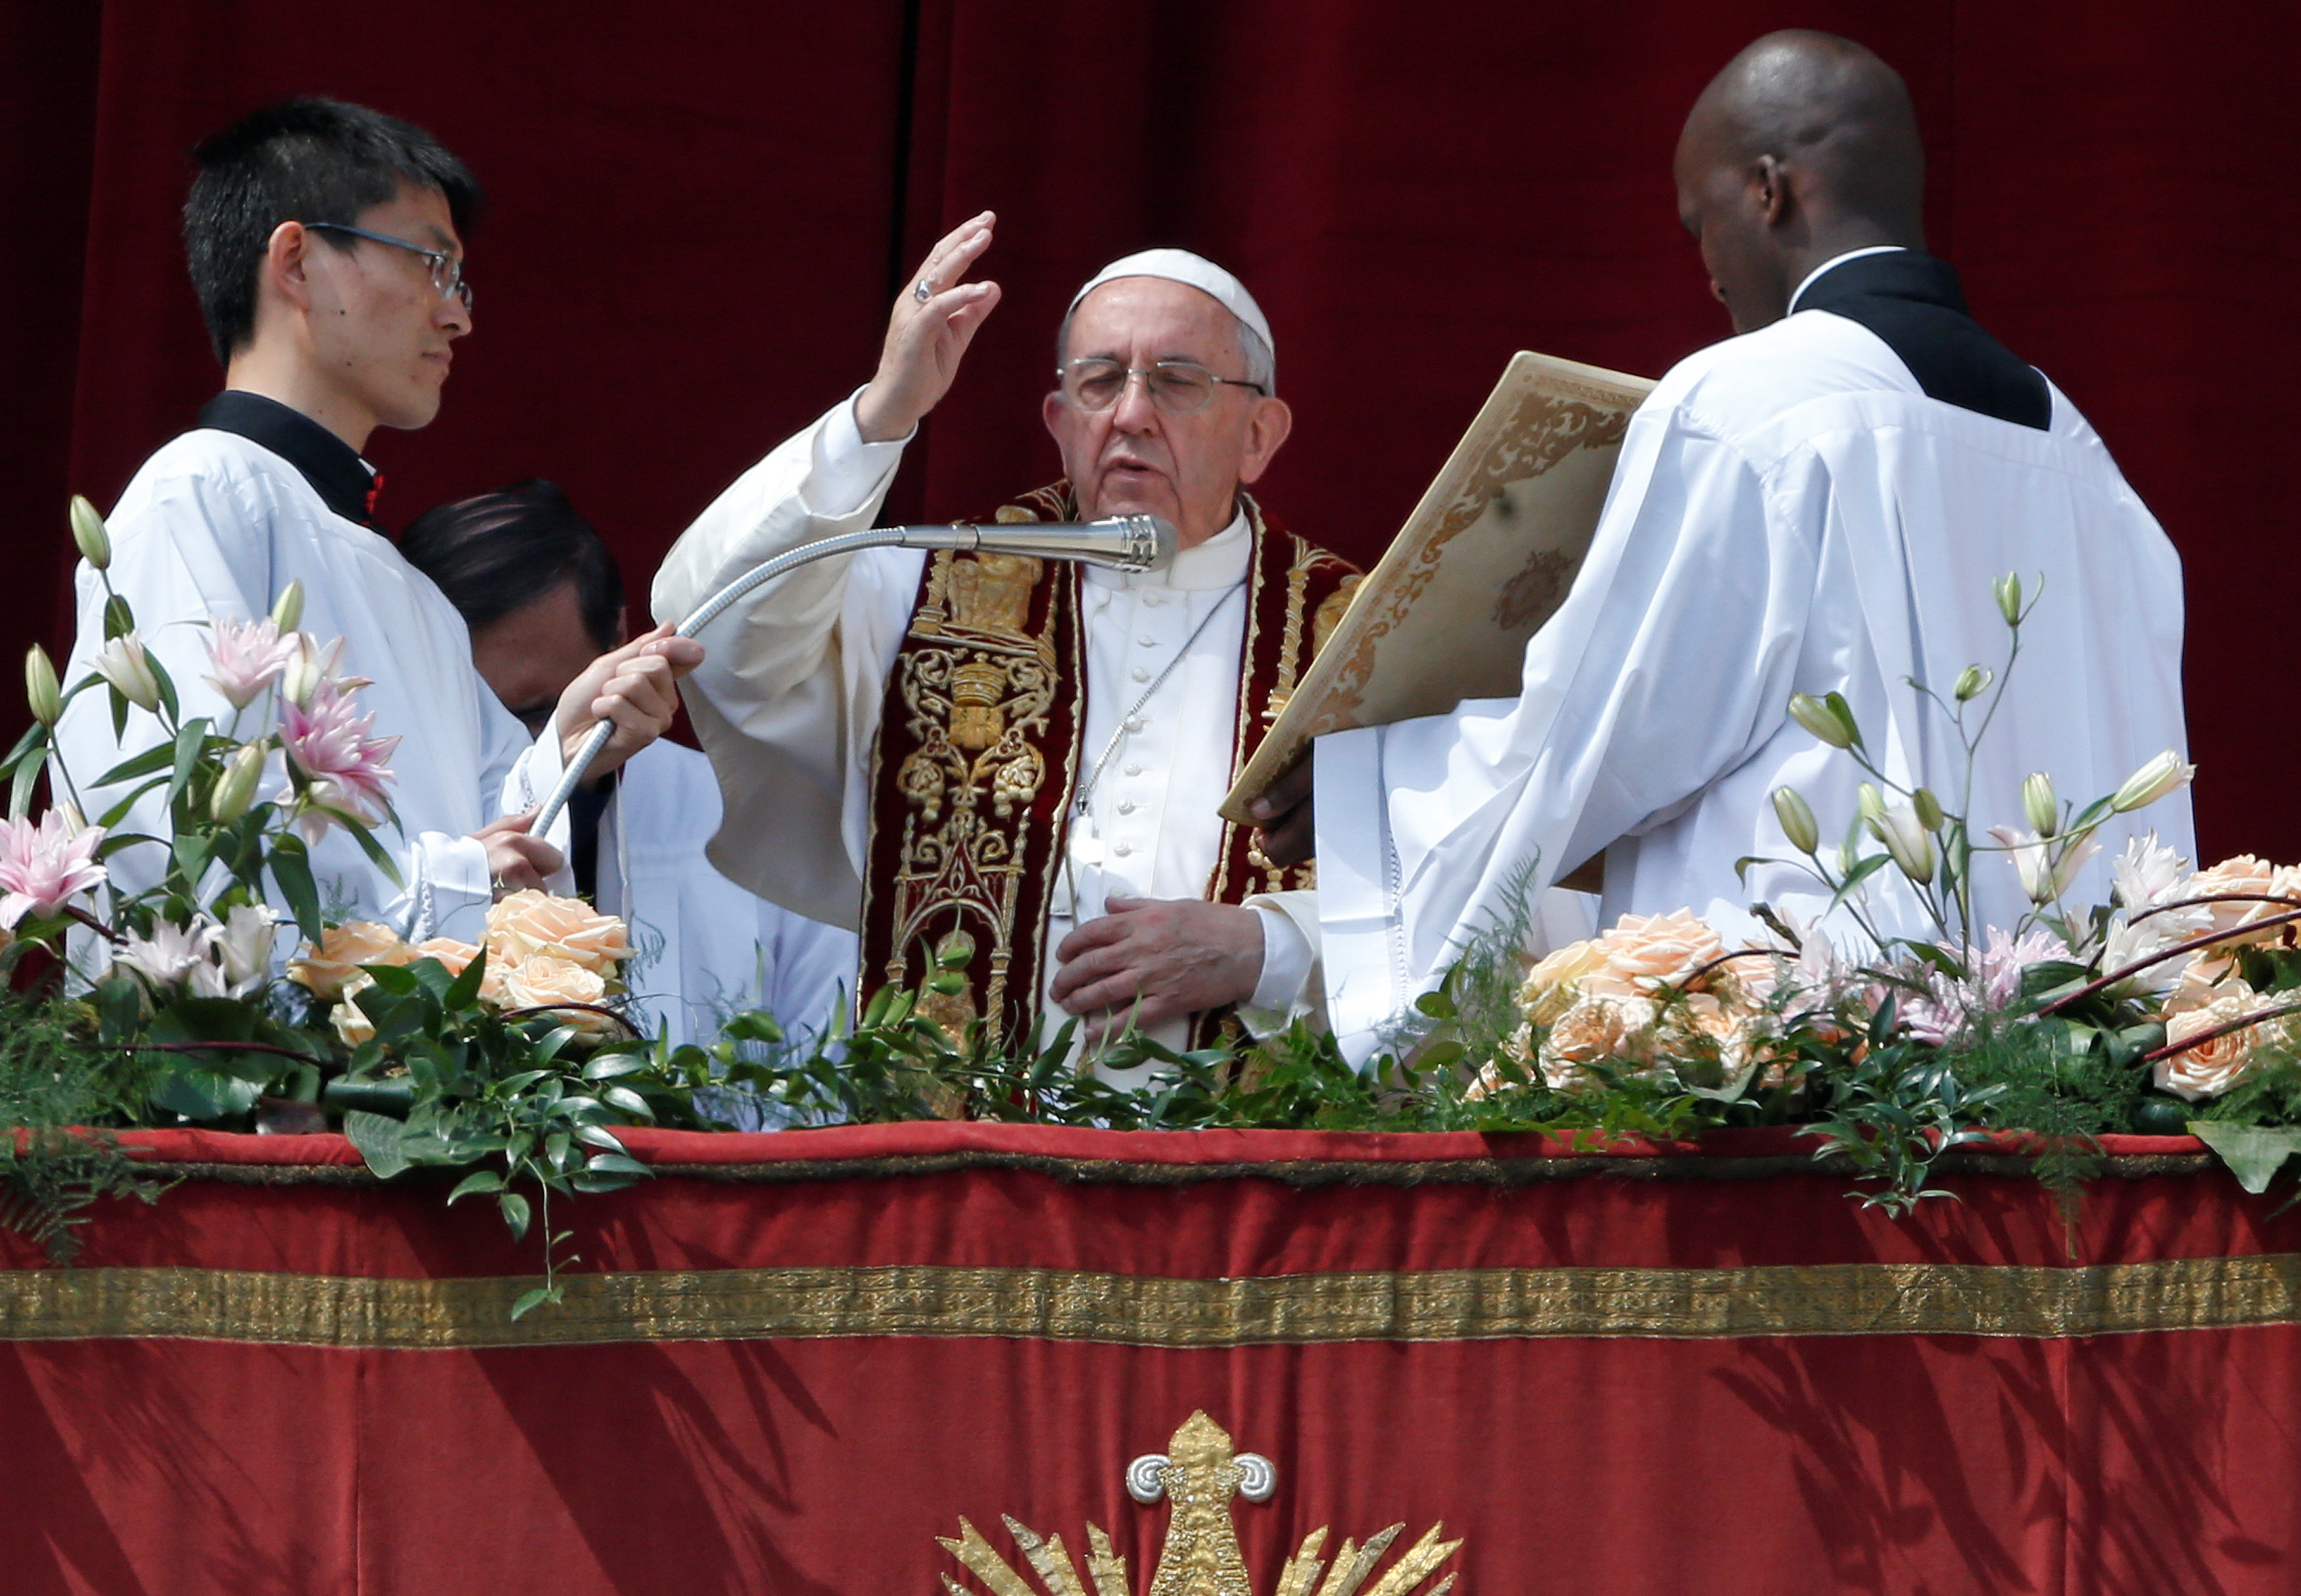 Στο δράμα της Συρίας αναφέρθηκε ο Πάπας στο πασχαλινό του μήνυμα